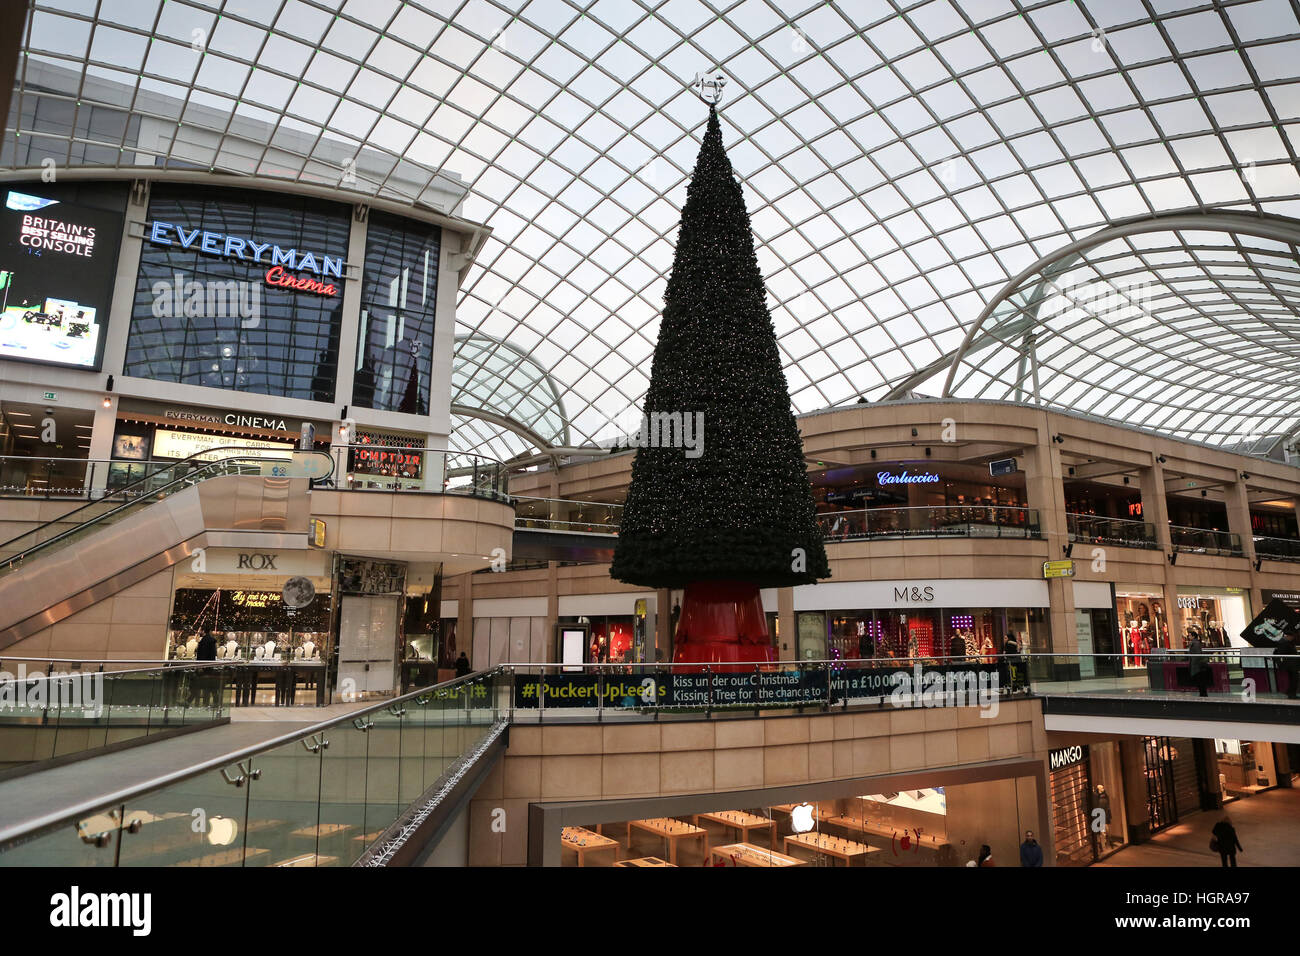 02/12/16, Leeds, Royaume-Uni. un arbre de Noël et décorations festives ornent la trinité shopping centre à Leeds, West Yorkshire. que décembre arrive dans uk sh Banque D'Images